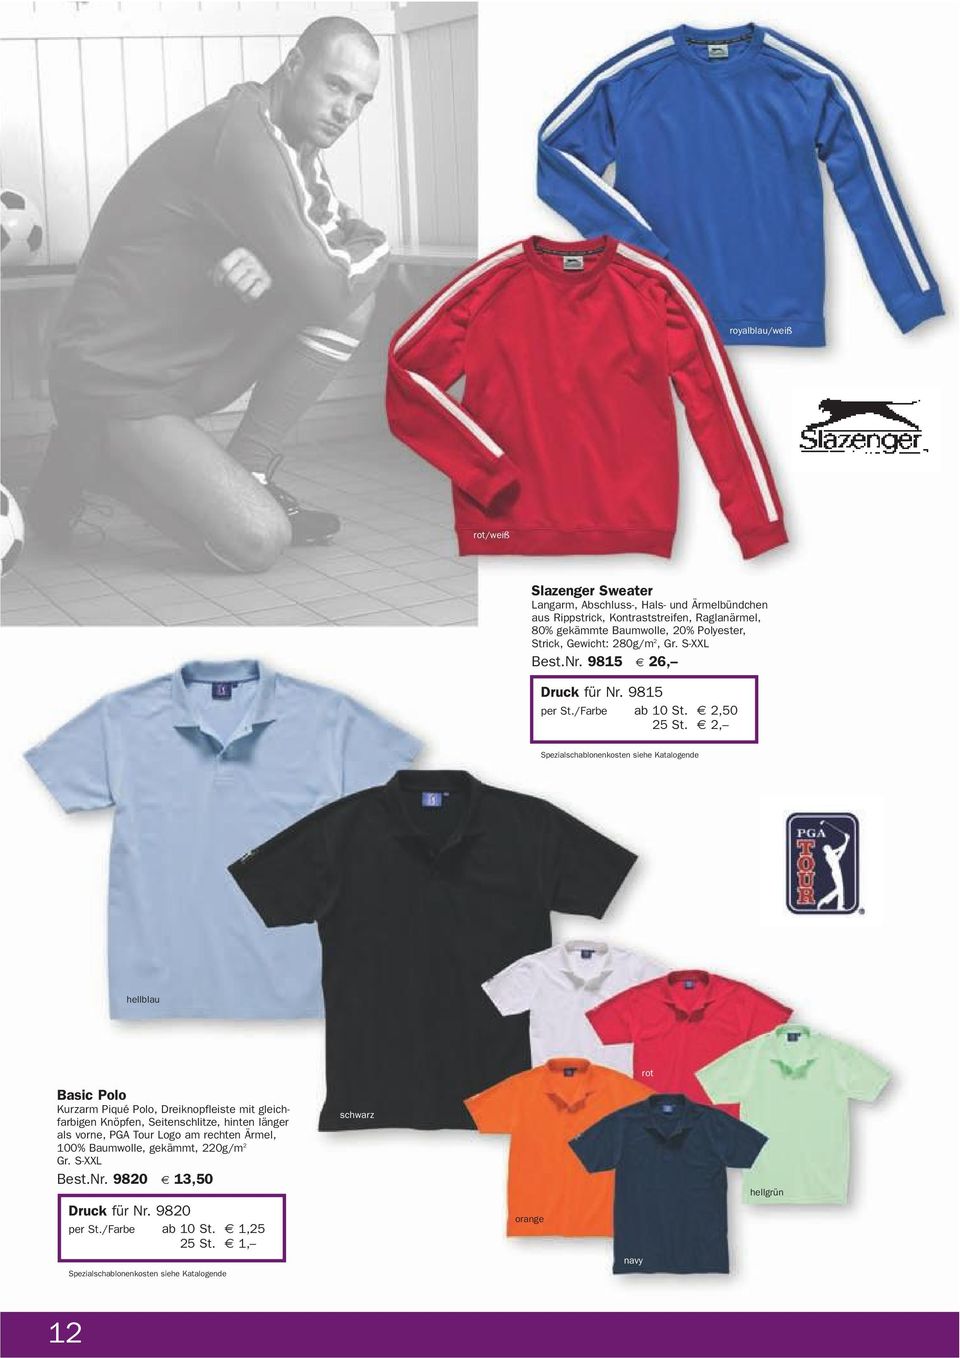 2, hellblau rot Basic Polo Kurzarm Piqué Polo, Dreiknopfleiste mit gleichfarbigen Knöpfen, Seitenschlitze, hinten länger als vorne, PGA Tour Logo am